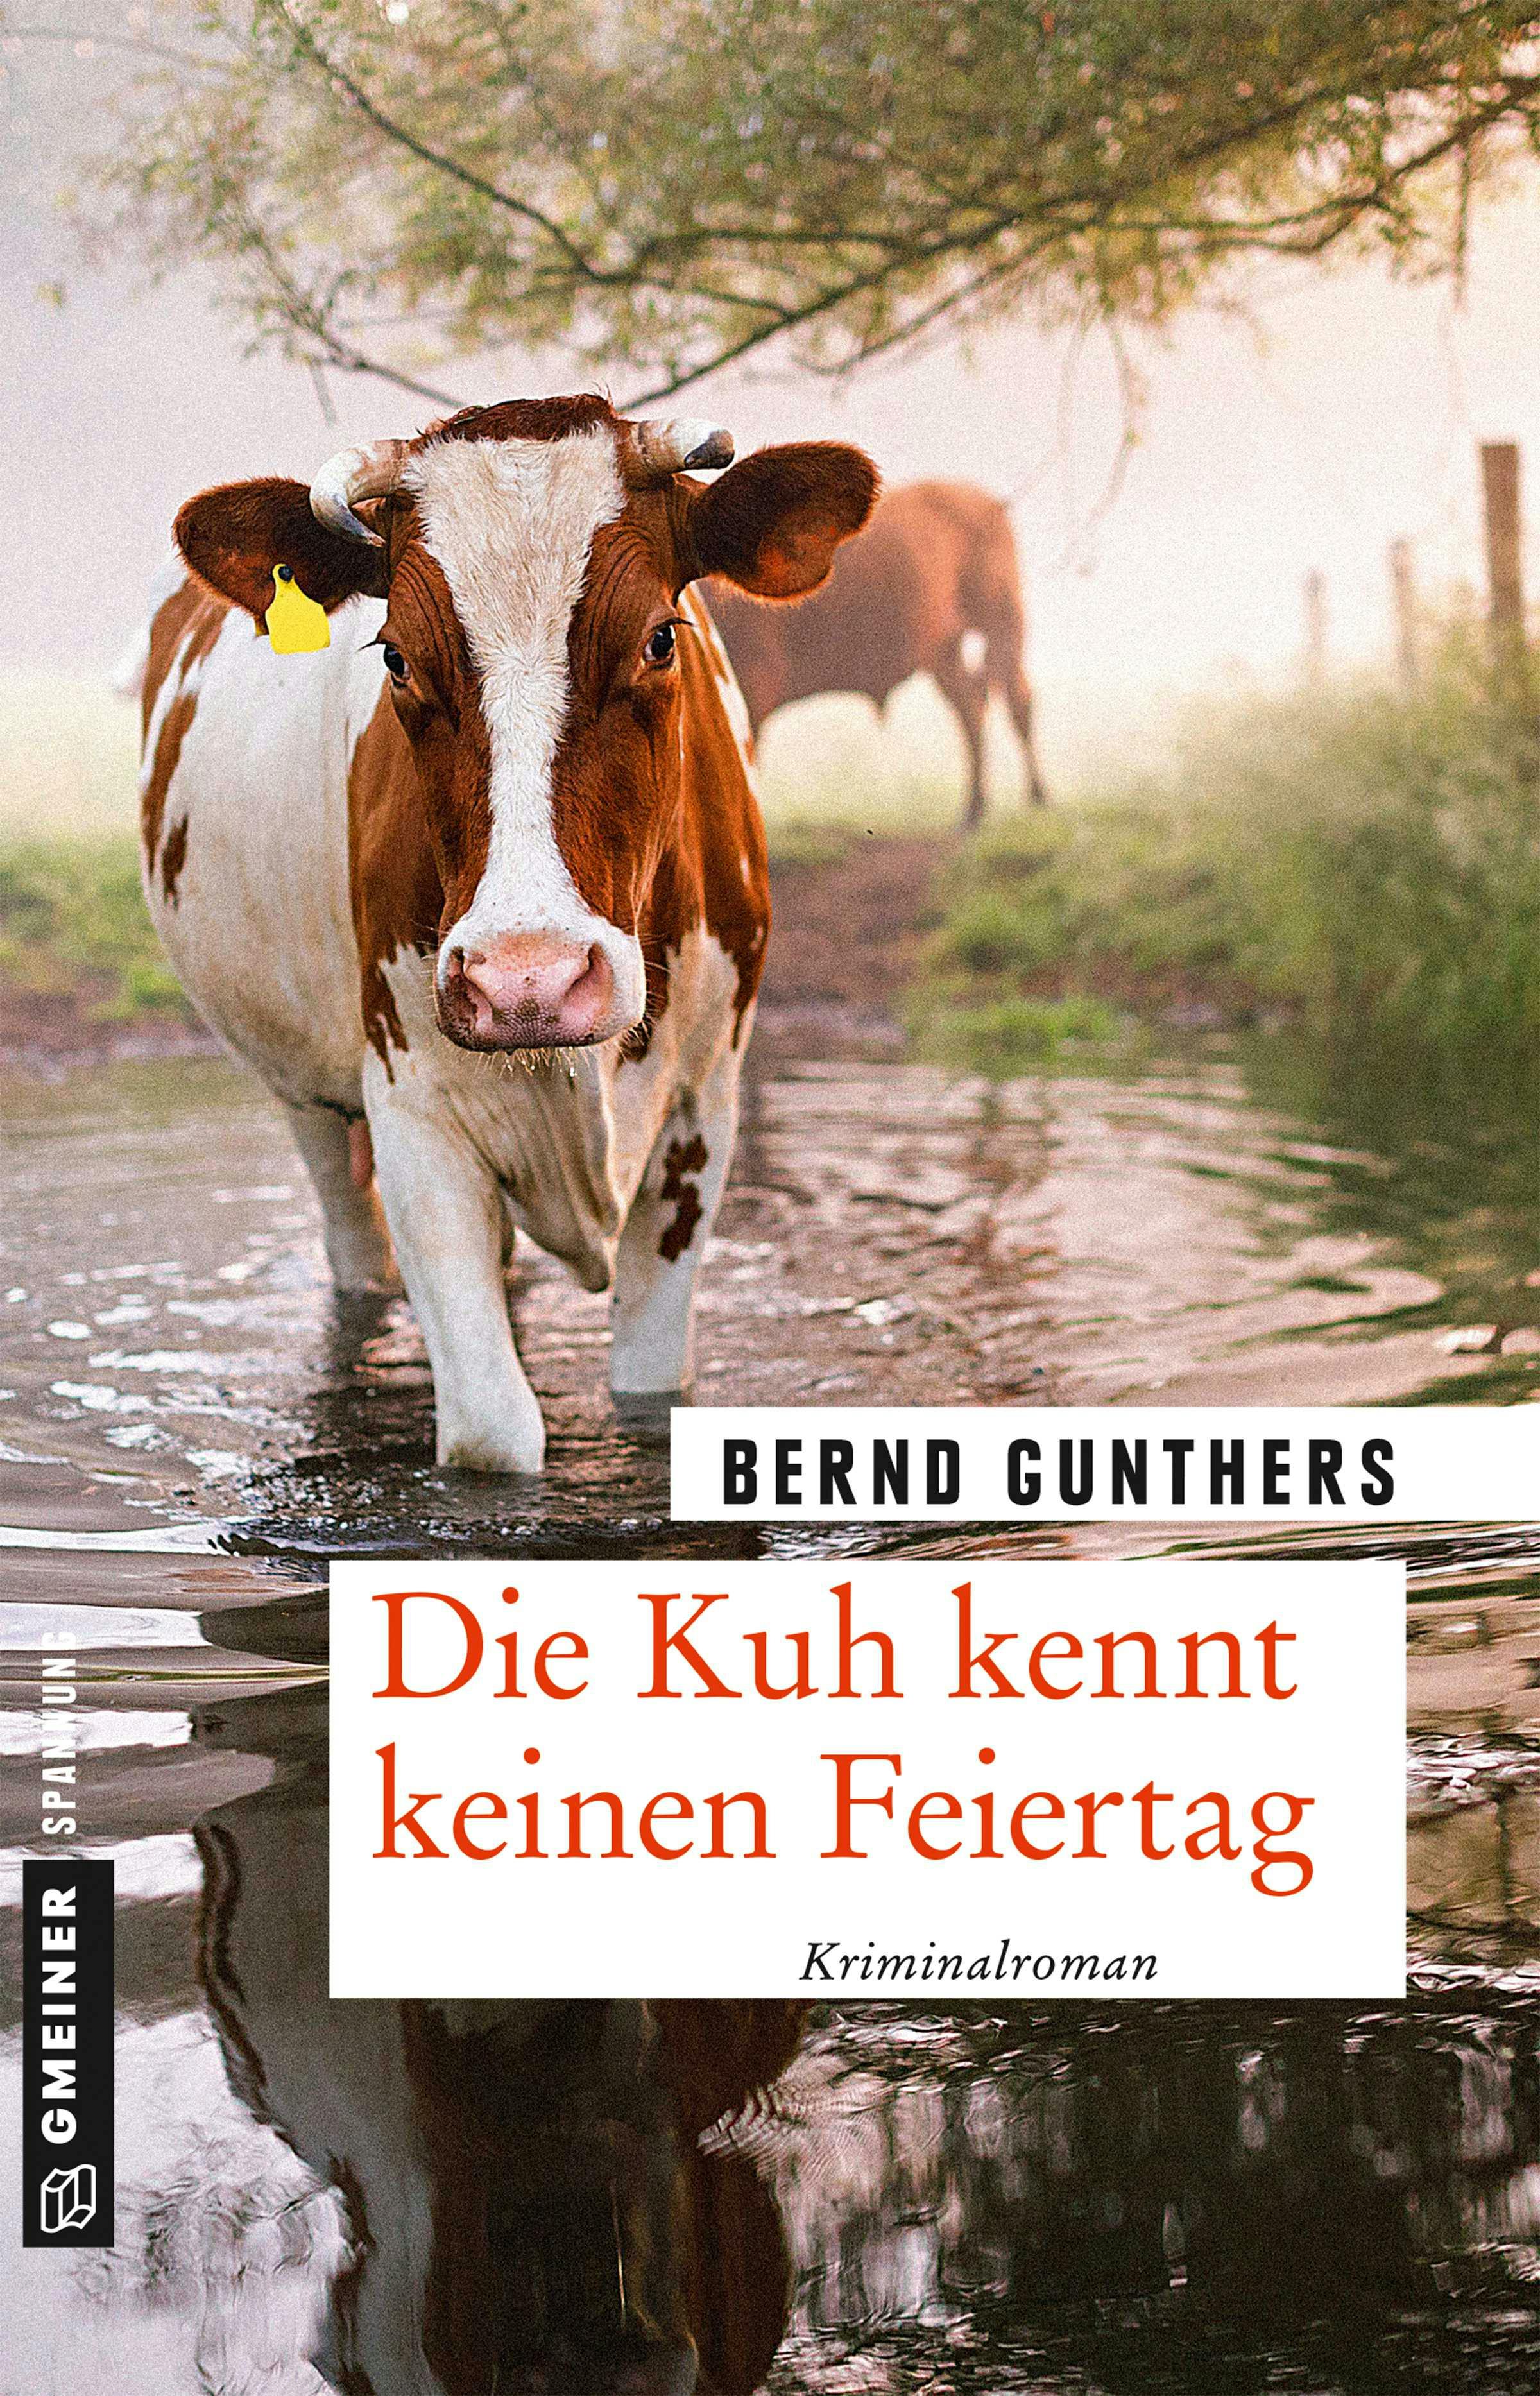 Die Kuh kennt keinen Feiertag - Bernd Gunthers